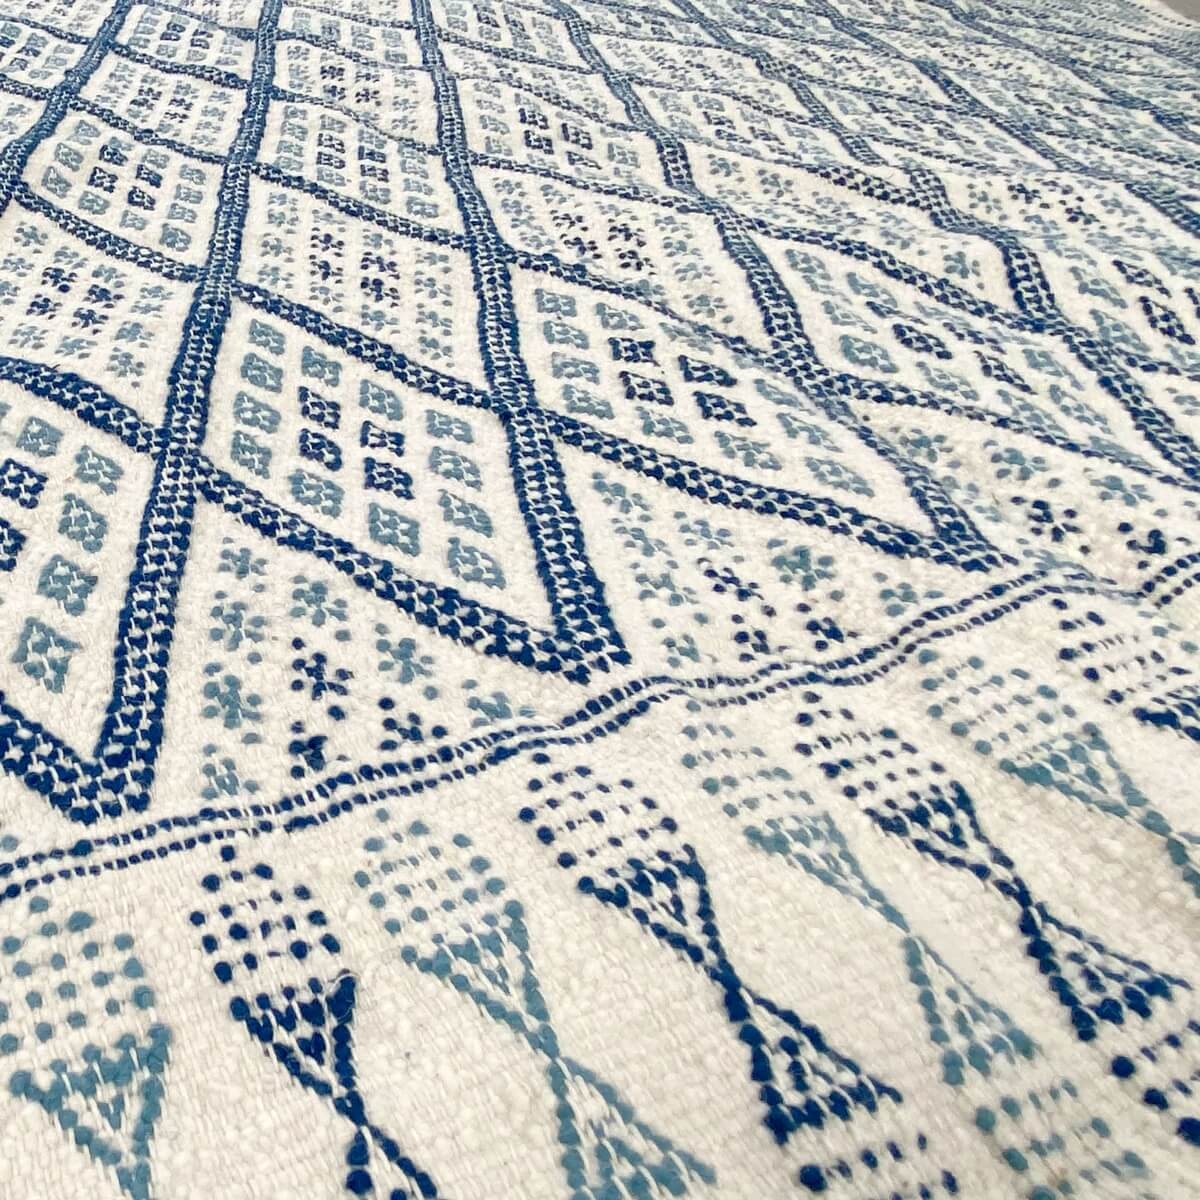 Berber tapijt Tapijt Margoum Eddouh 210x290 Blauw/Wit (Handgeweven, Wol, Tunesië) Tunesisch Margoum Tapijt uit de stad Kairouan.